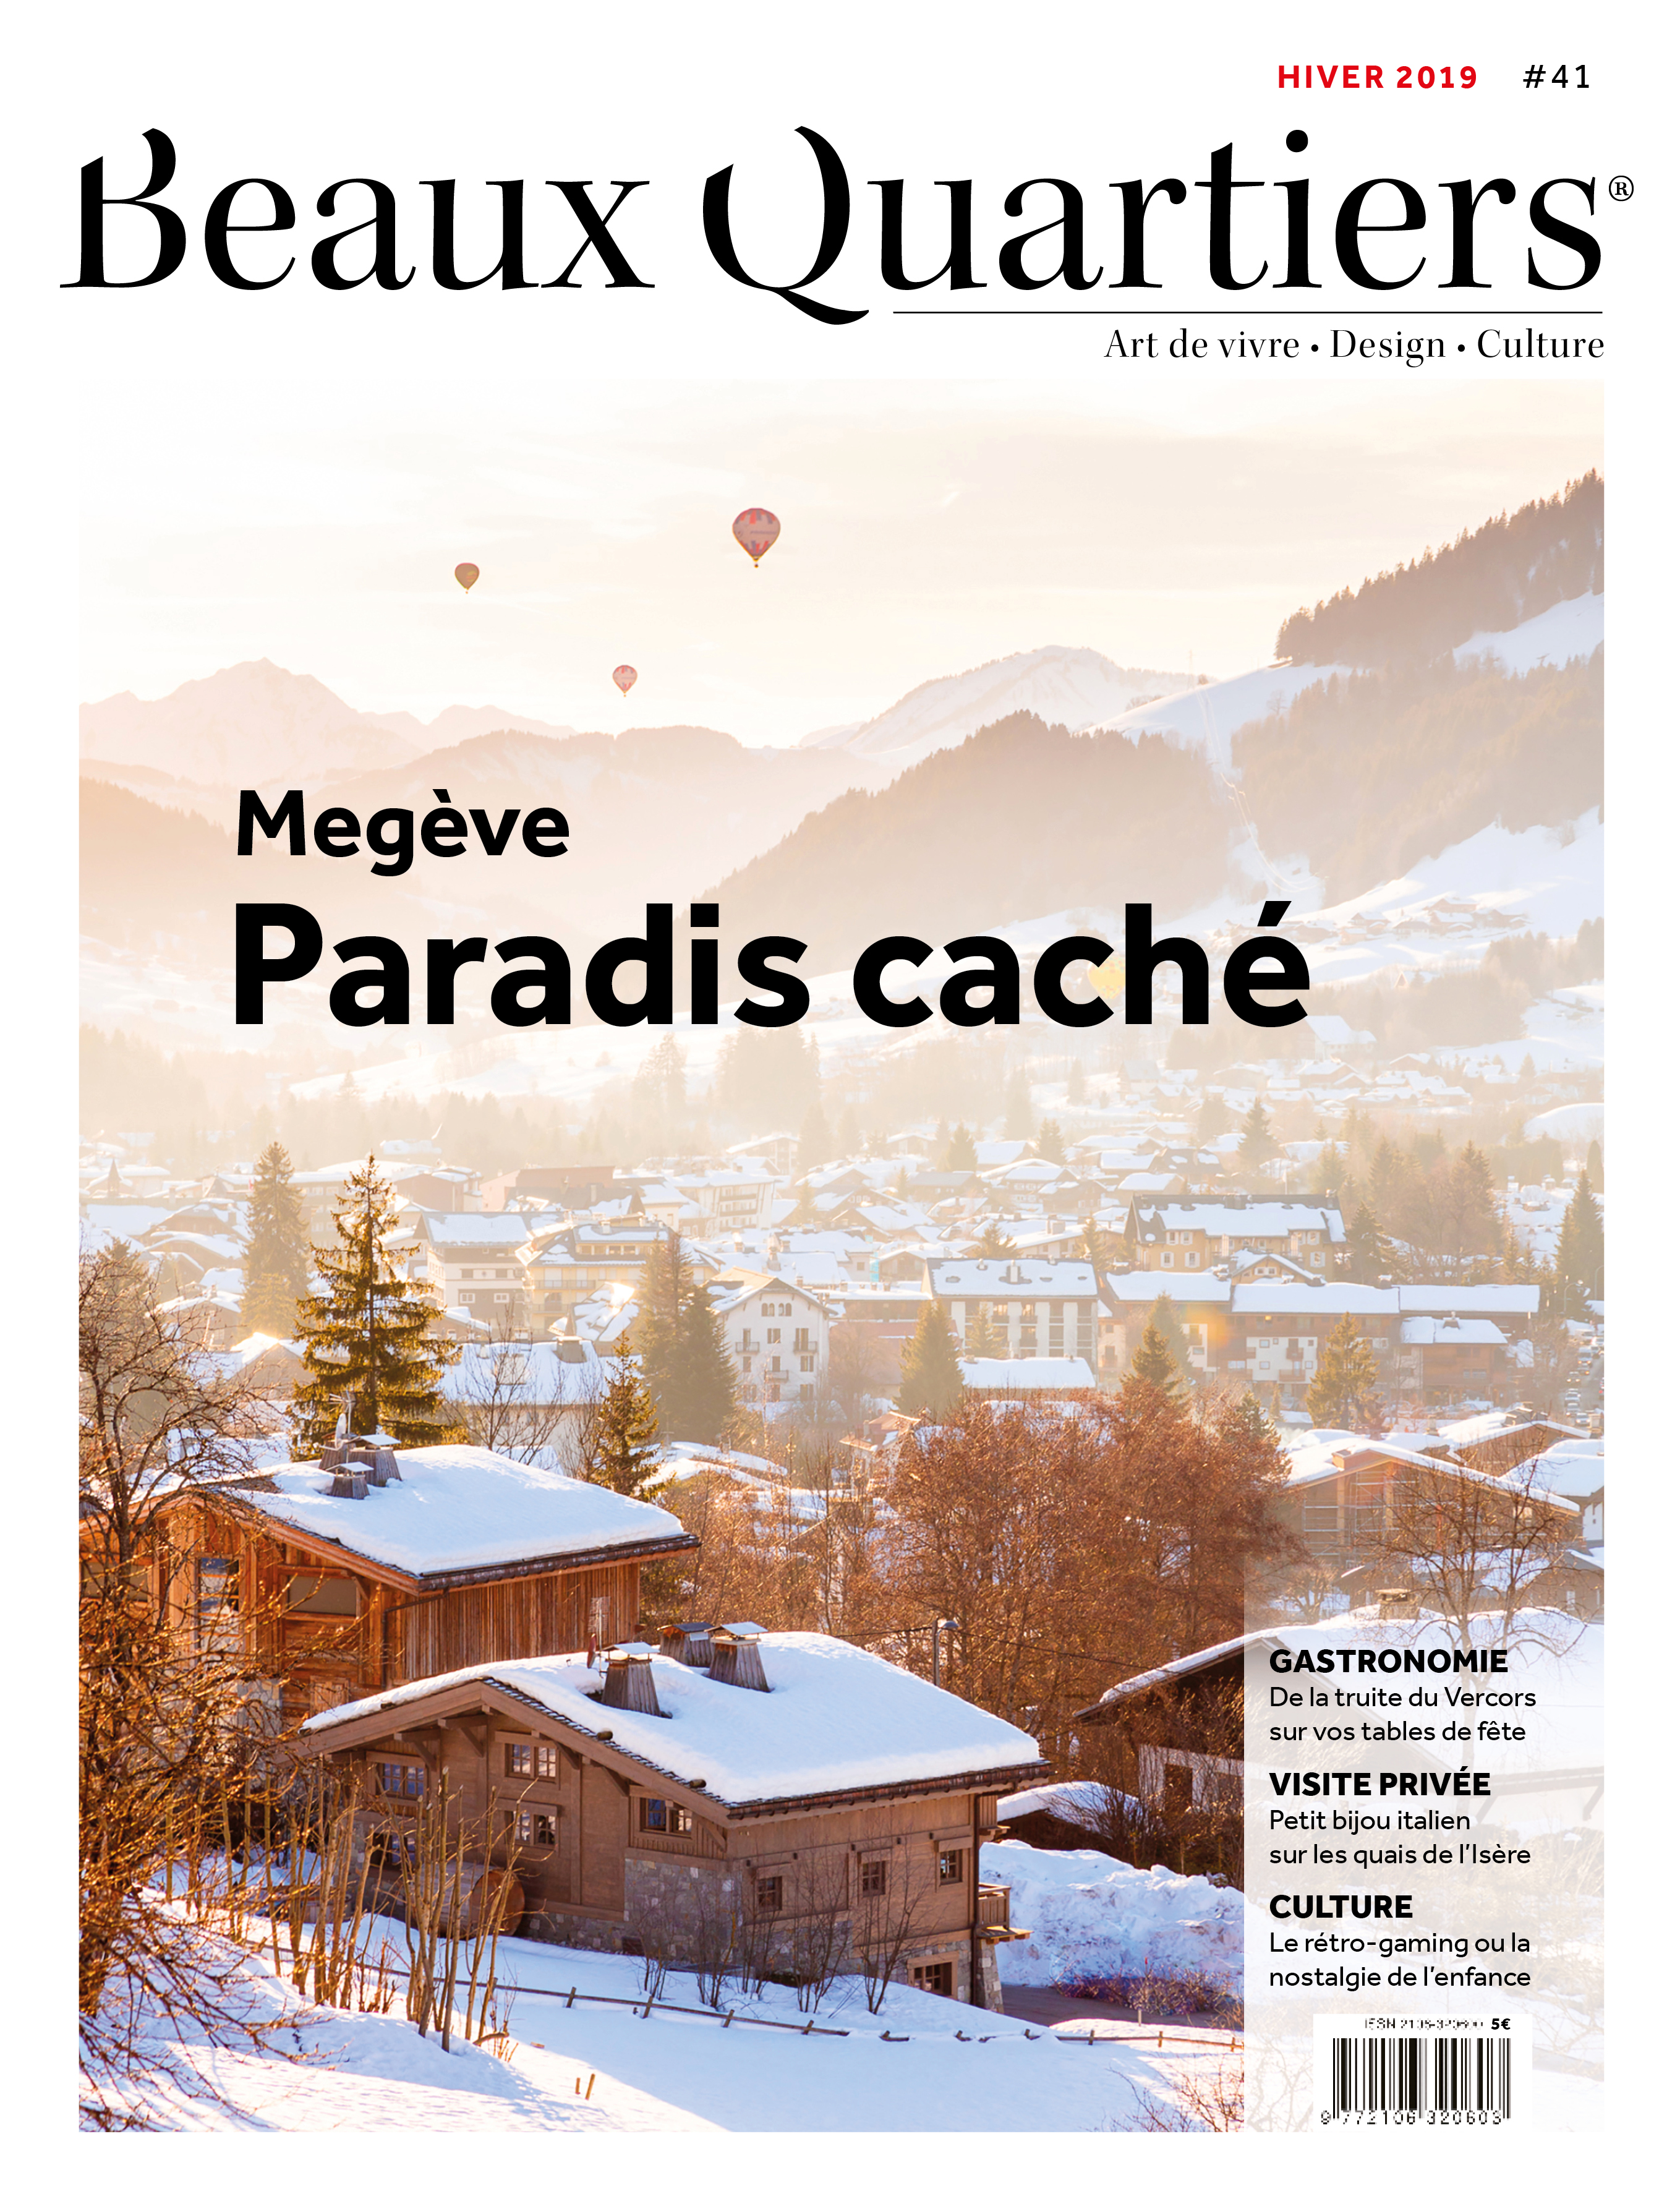 Beaux Quartiers 41 – Hiver 2019